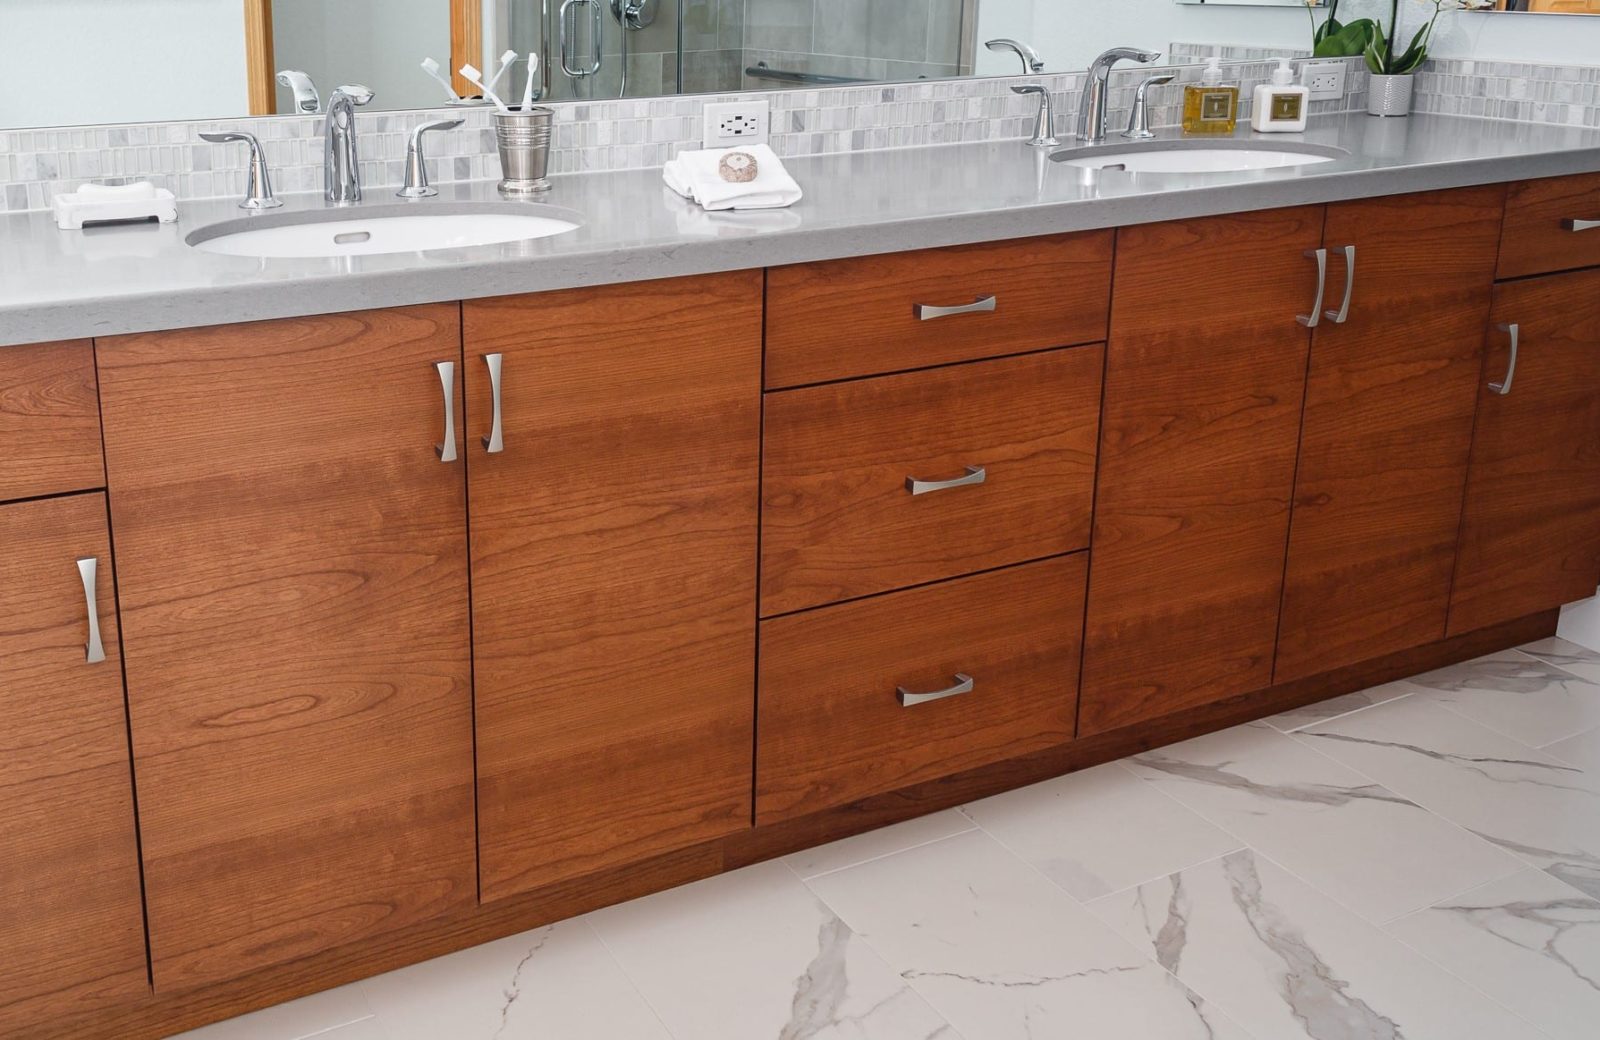 Pleasant Hill master bath with single grain wood cabinets, quartz countertops